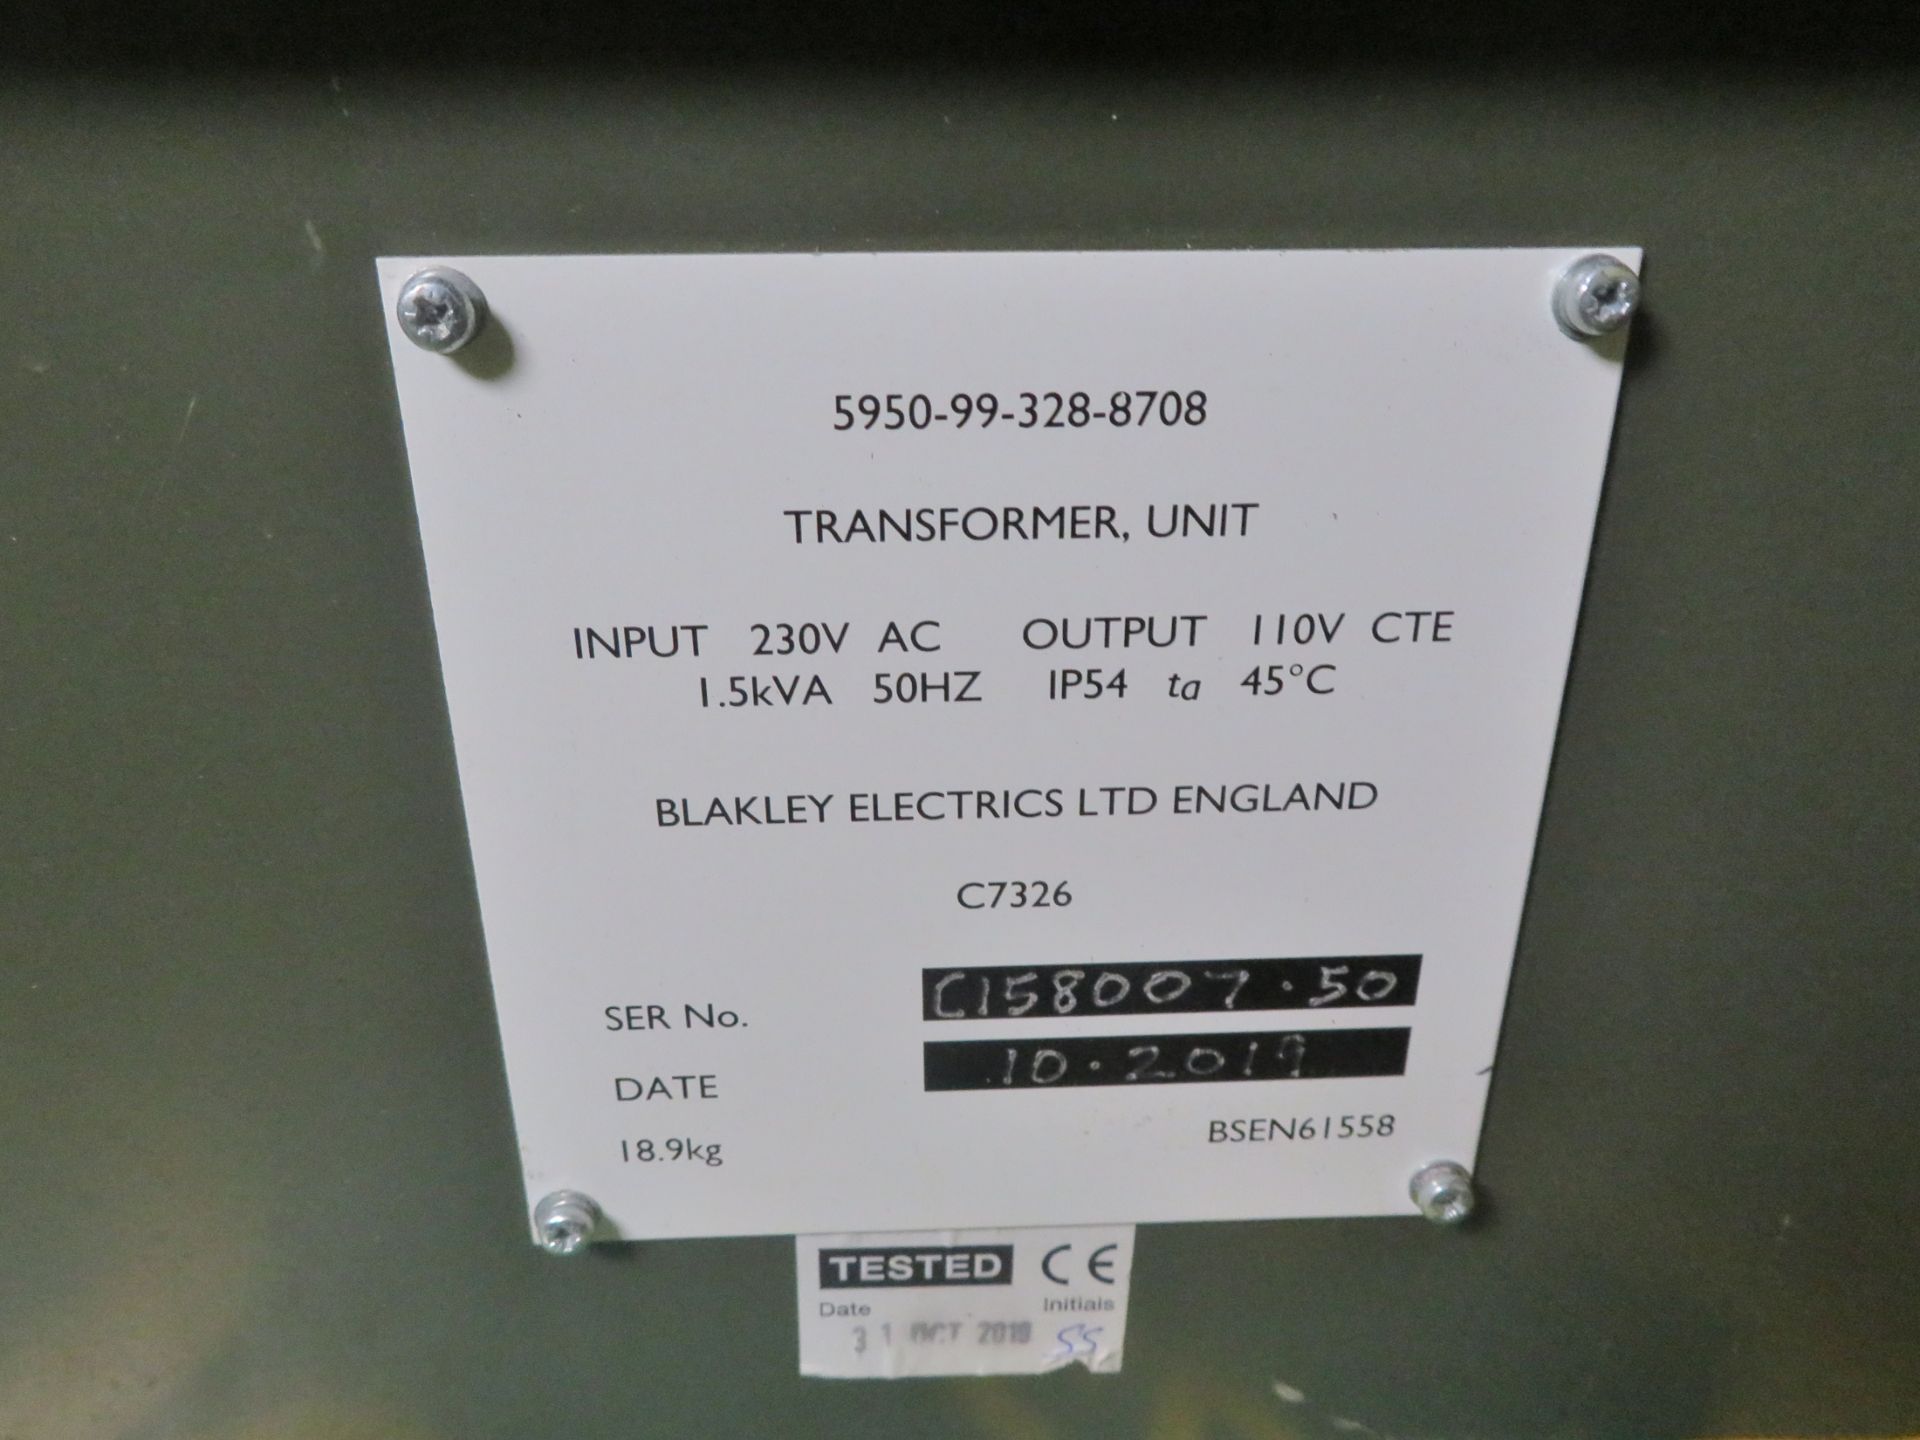 2x Blakley C7326 Transformer Units Input 230v Output 110v - Image 4 of 6